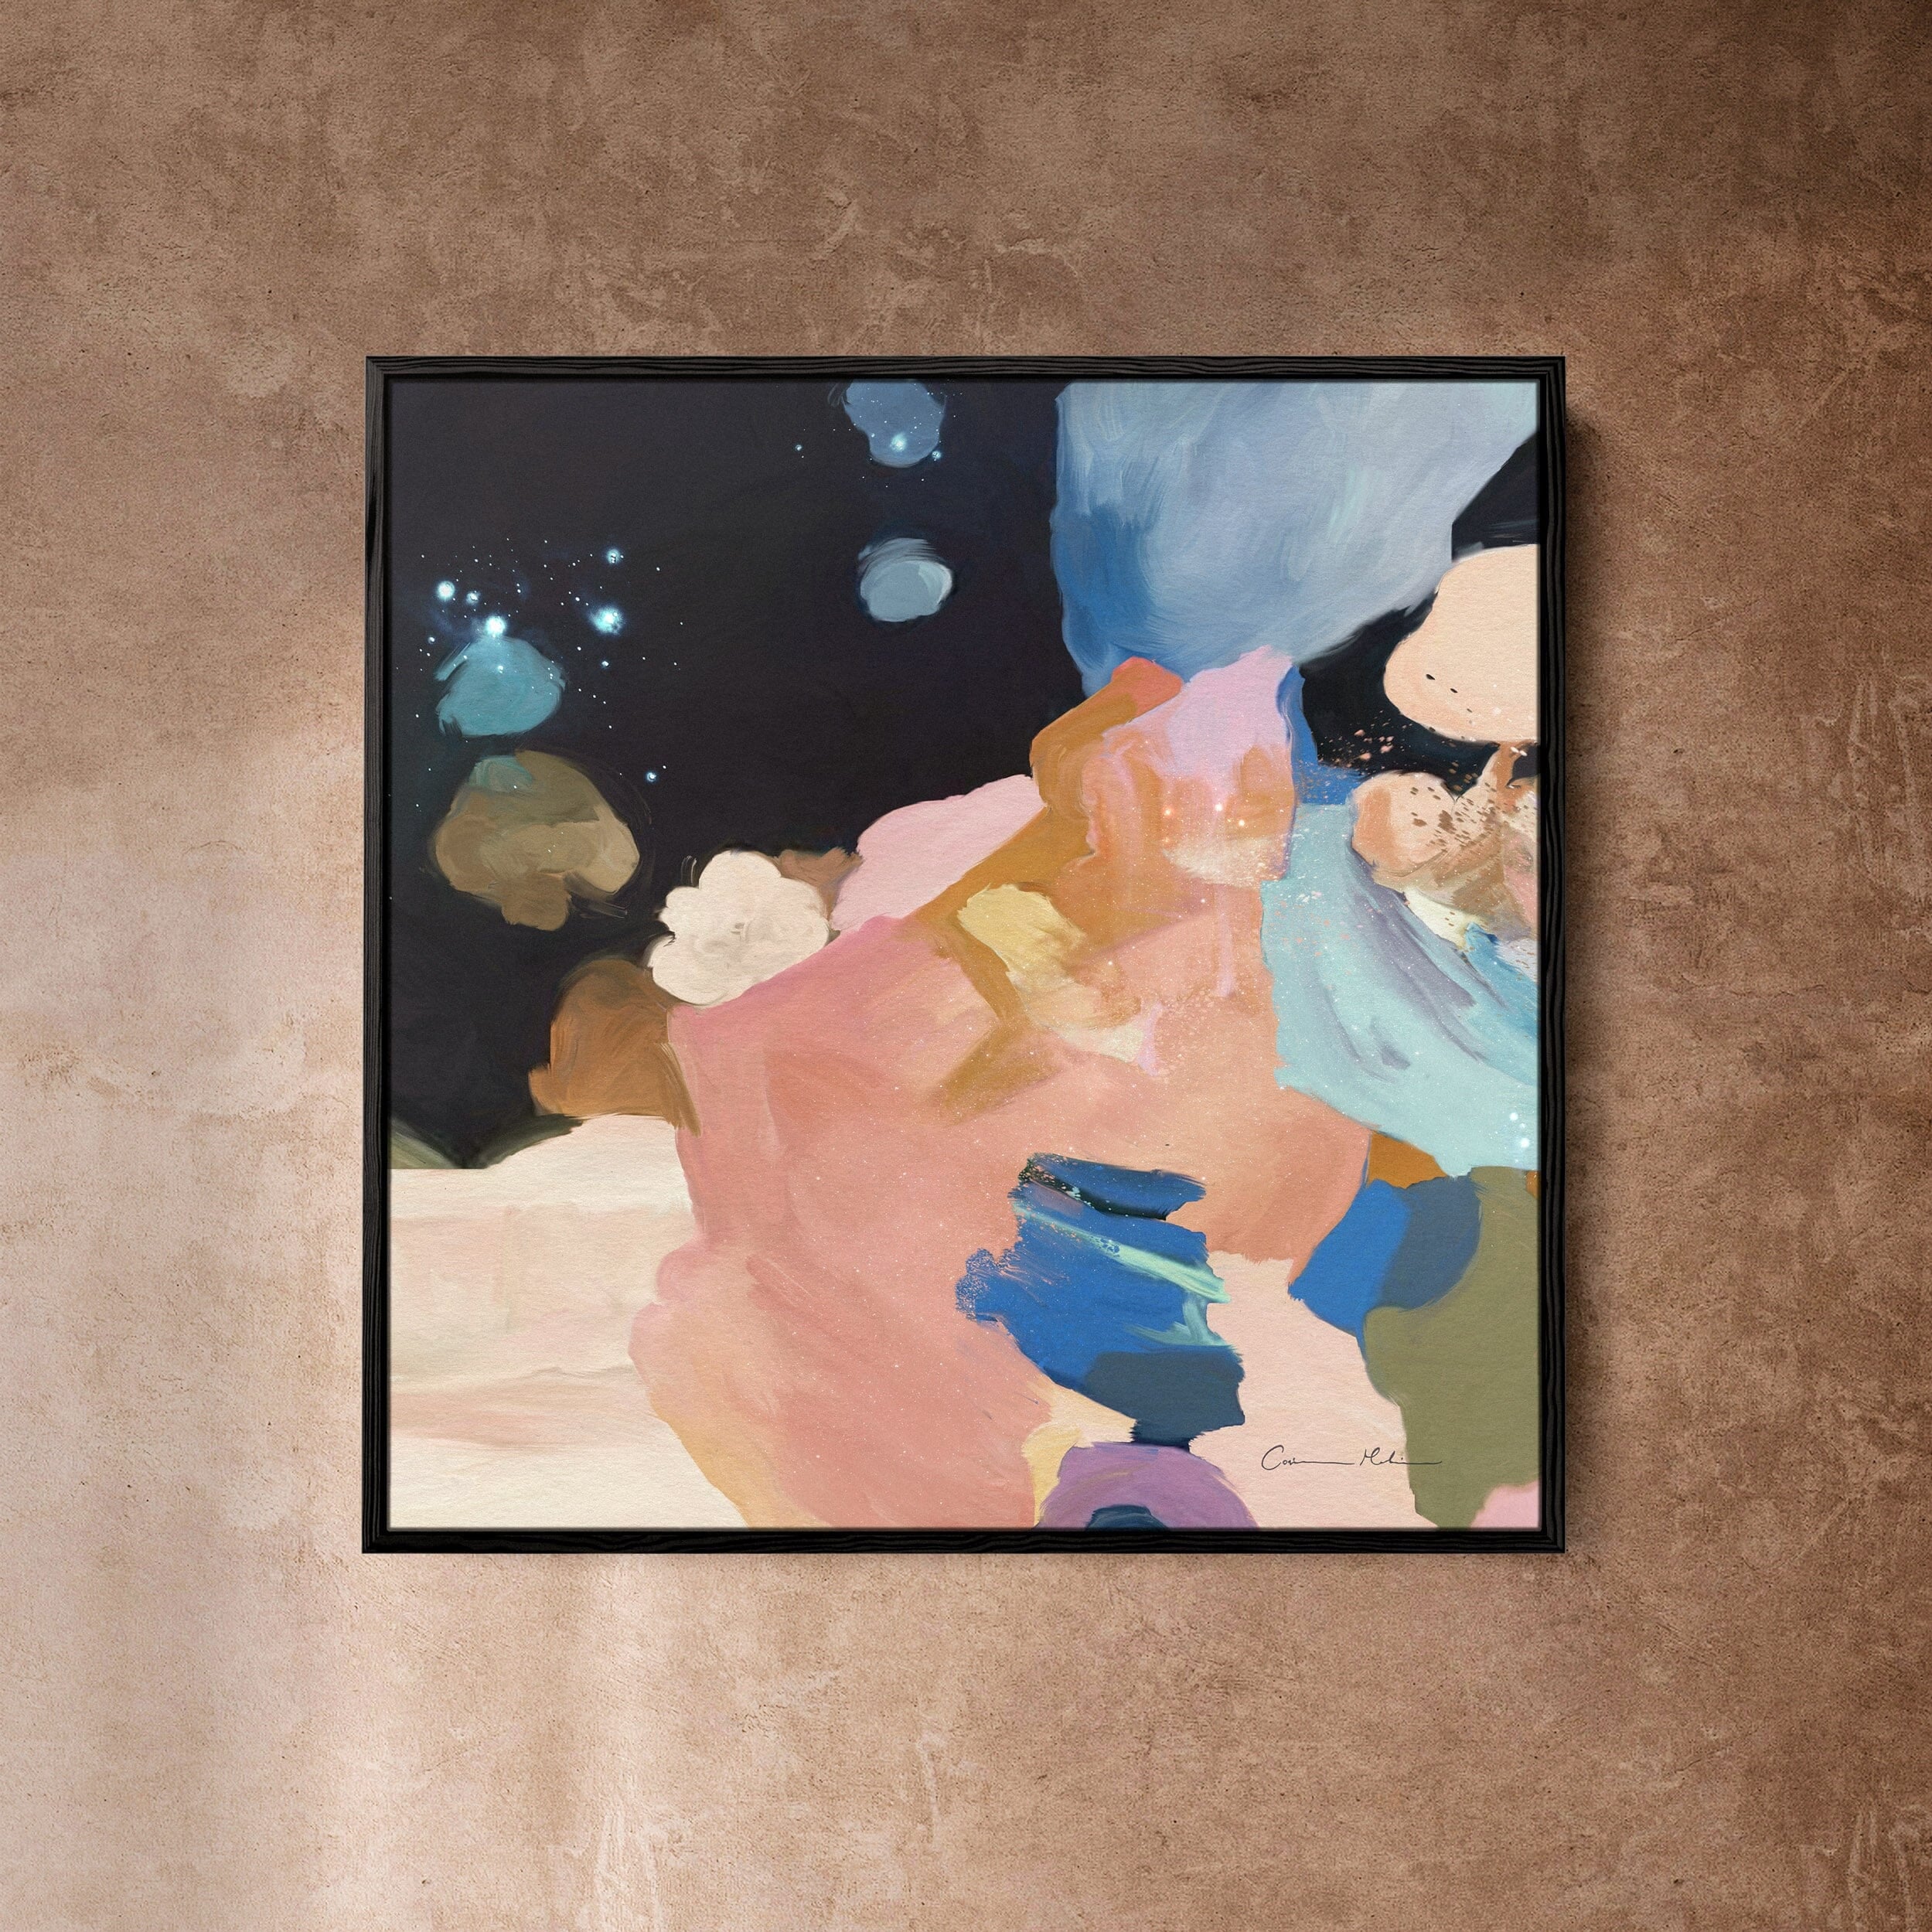 "Clara Auri No. 6" on Canvas Canvas Wall Art Corinne Melanie Professionally Framed - Black 20x20in / 50x50cm 